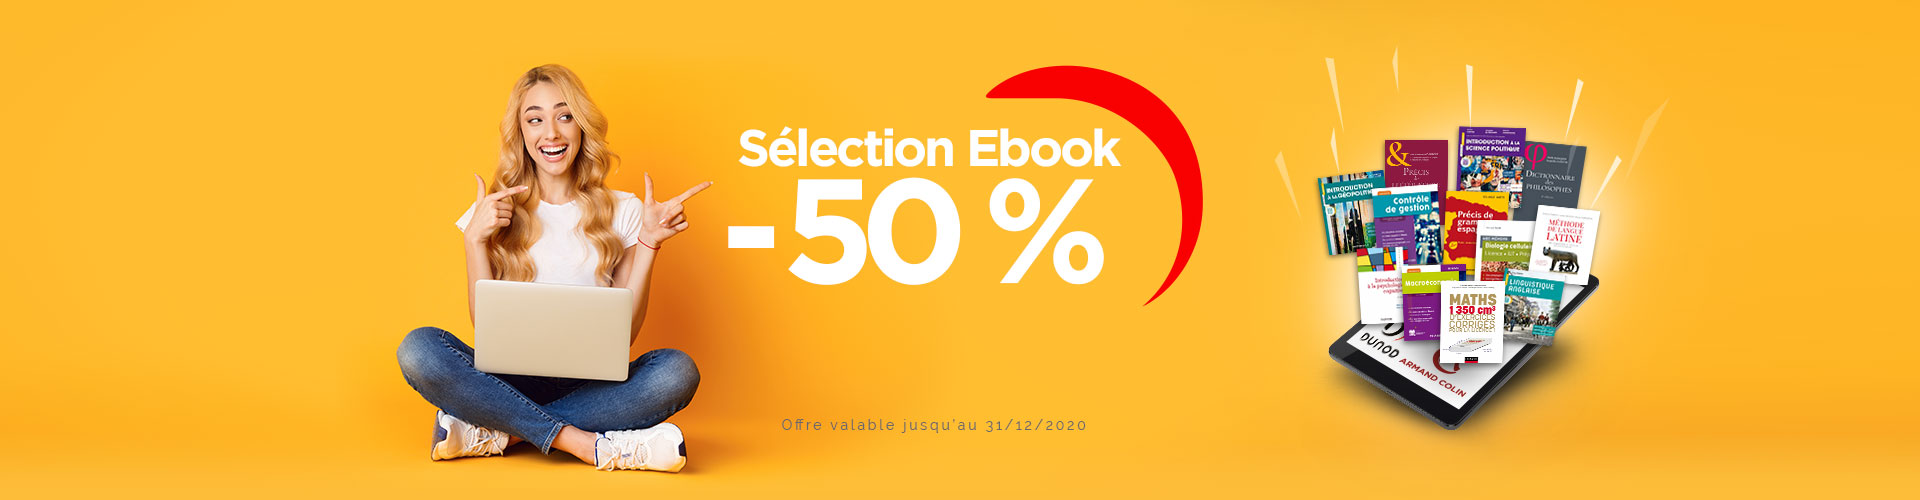 Offre spécial étudiants enseignement supérieur - Sélection Ebook à -50 %